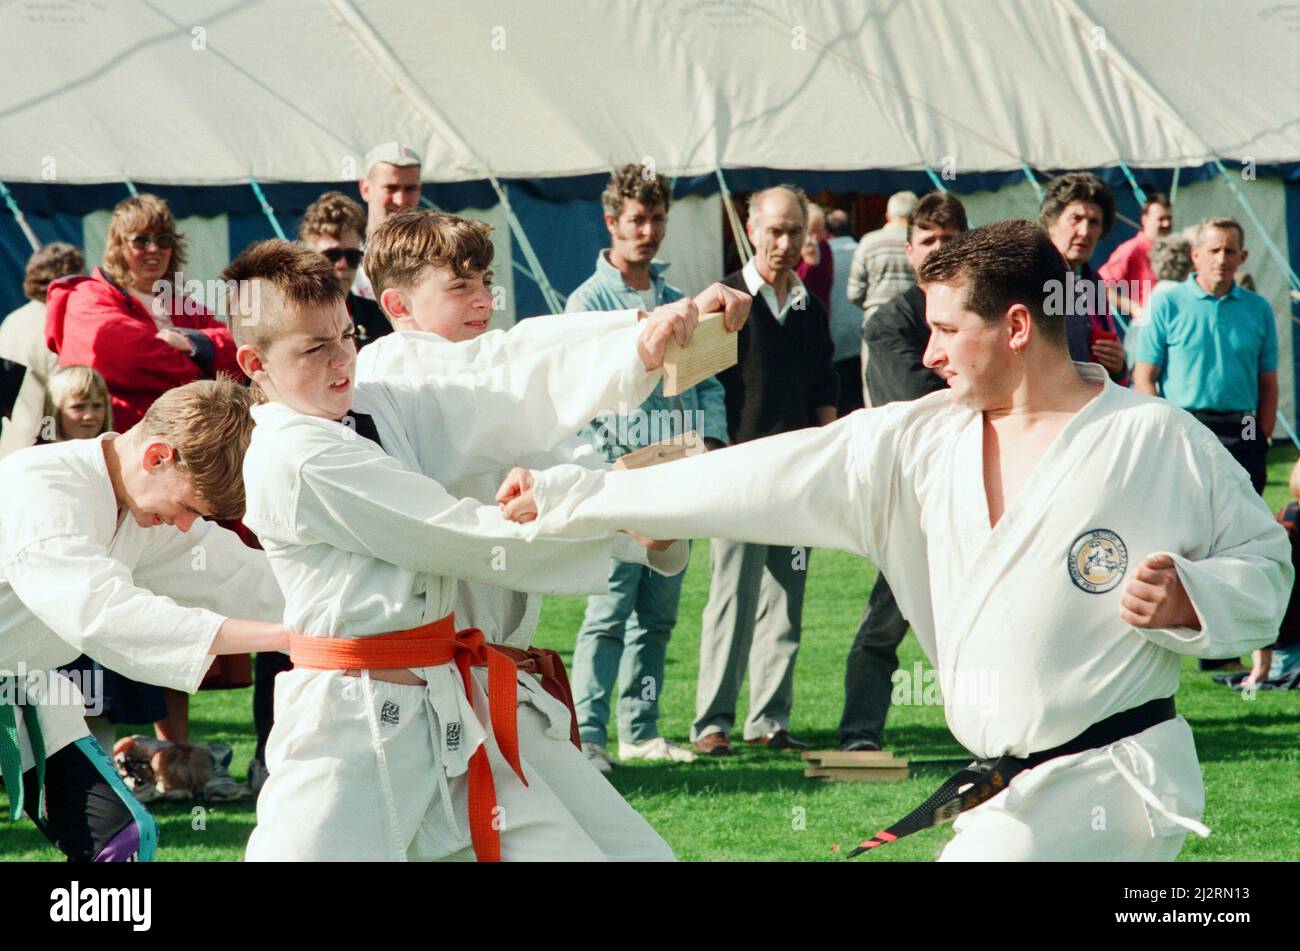 Salon agricole Castleton, 11th septembre 1993. Sur la photo. L'équipe de Judo a mis un meilleur pied en avant dans une démonstration de compétences. Banque D'Images